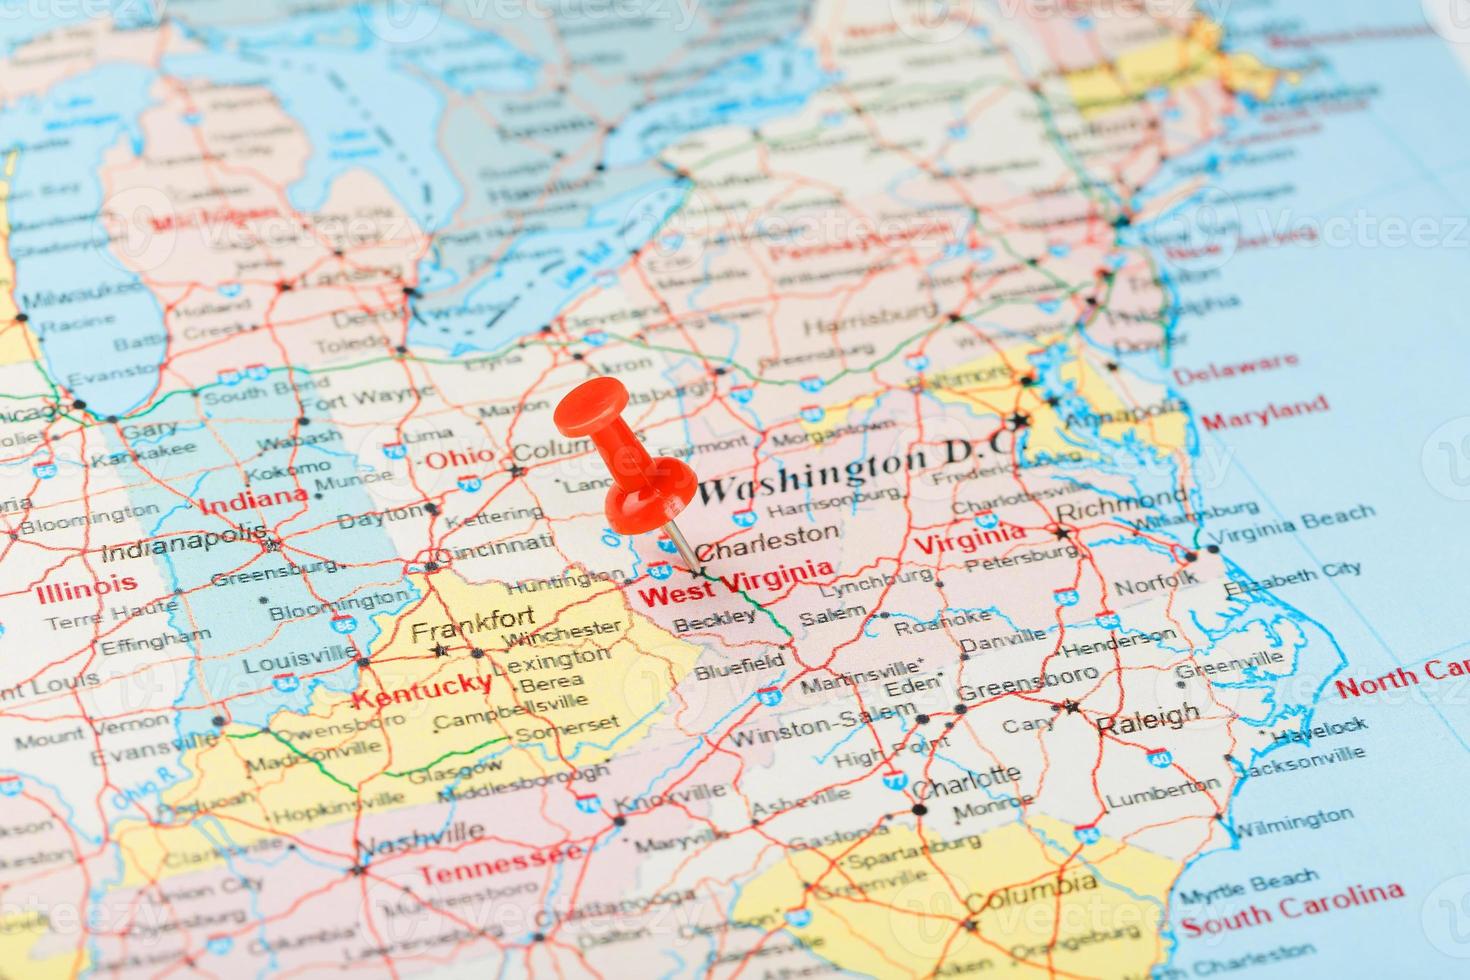 aiguille de bureau rouge sur une carte des états-unis, de la virginie du sud-ouest et de la capitale charleston. gros plan du sud-ouest de la virginie avec tack rouge photo